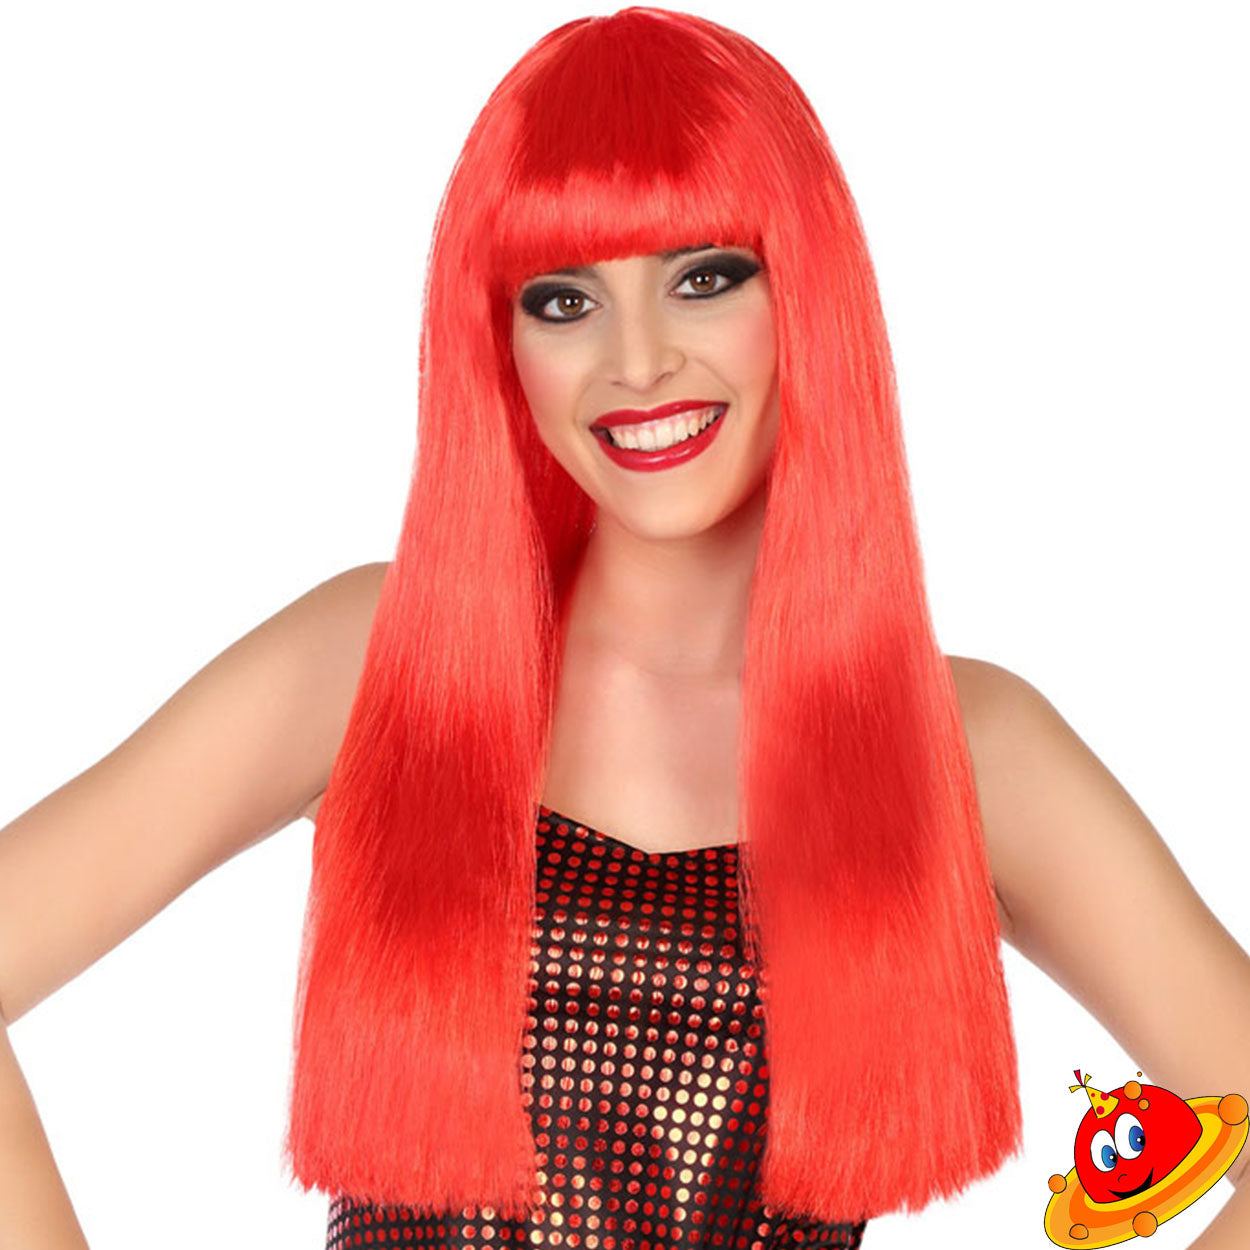 Parrucca lunga liscia 60 cm rossa con frangia